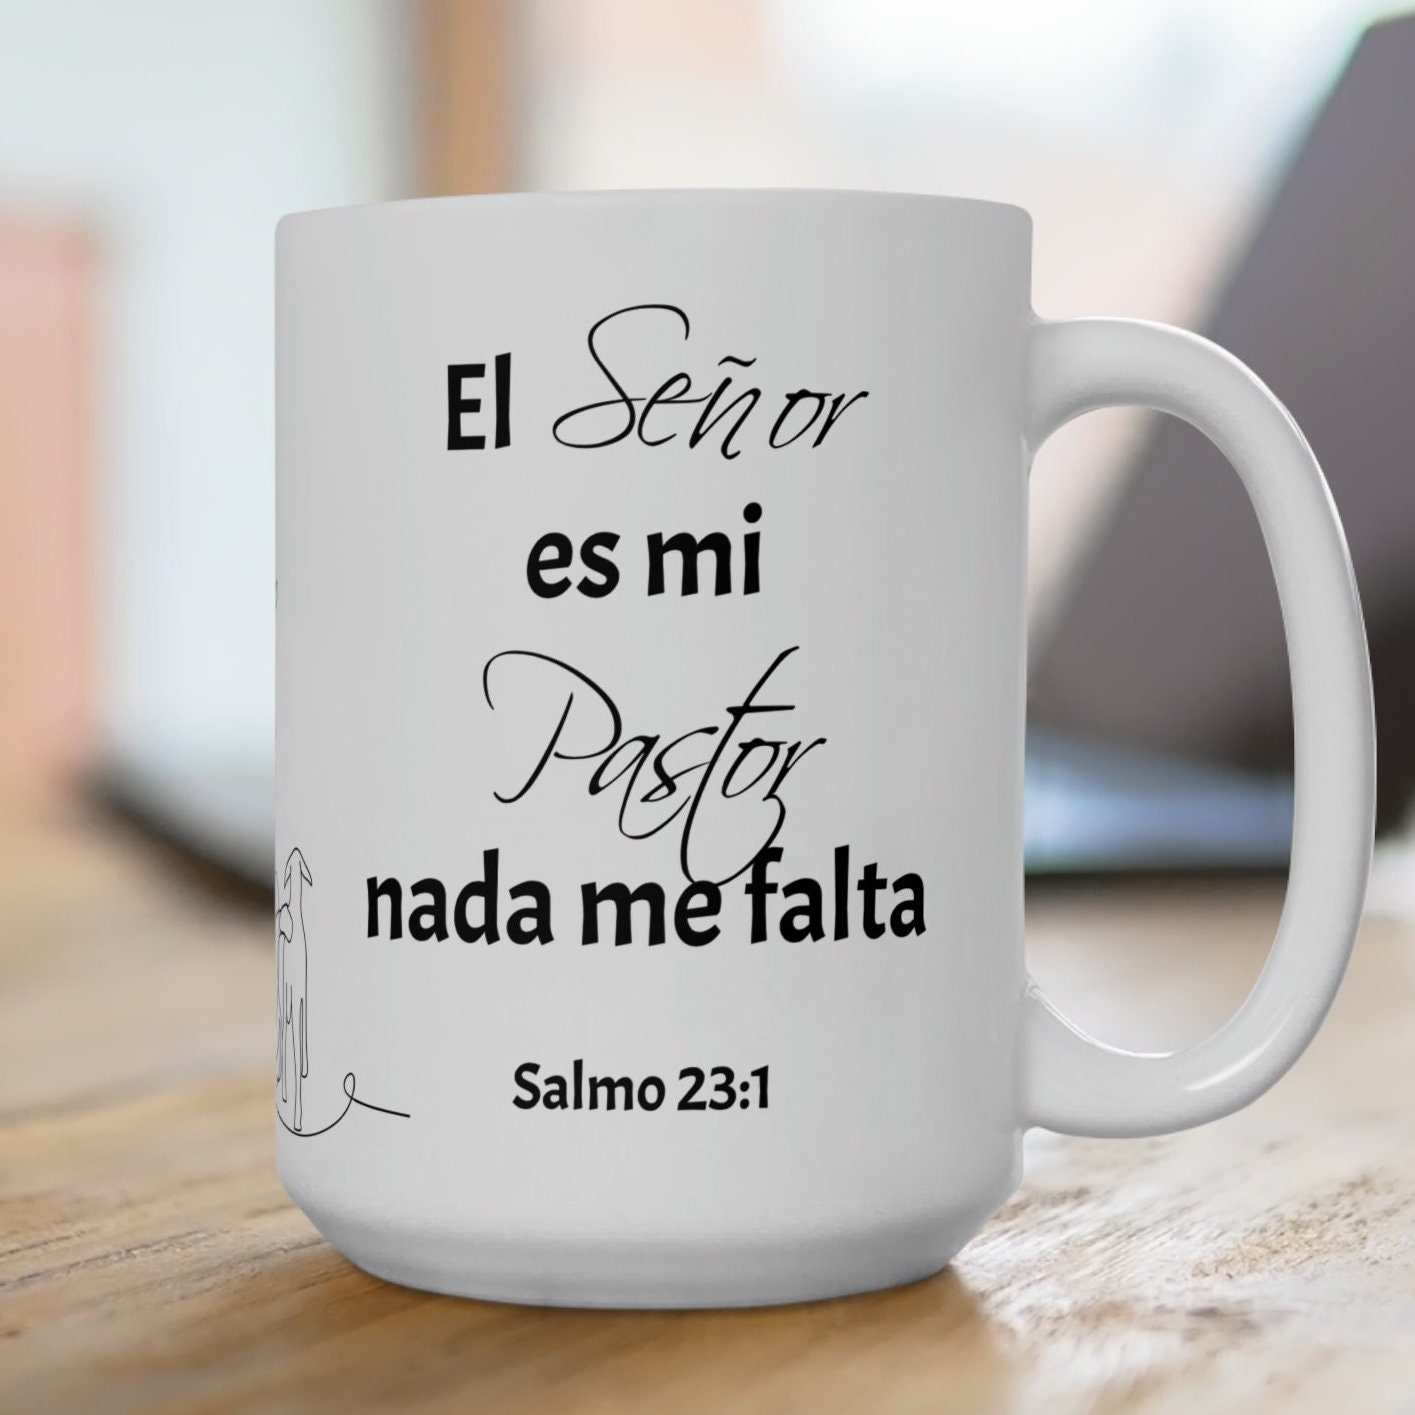 Salmo 23 - O Senhor é o meu Pastor, e nada me faltará Throw Pillow for  Sale by PraalStore